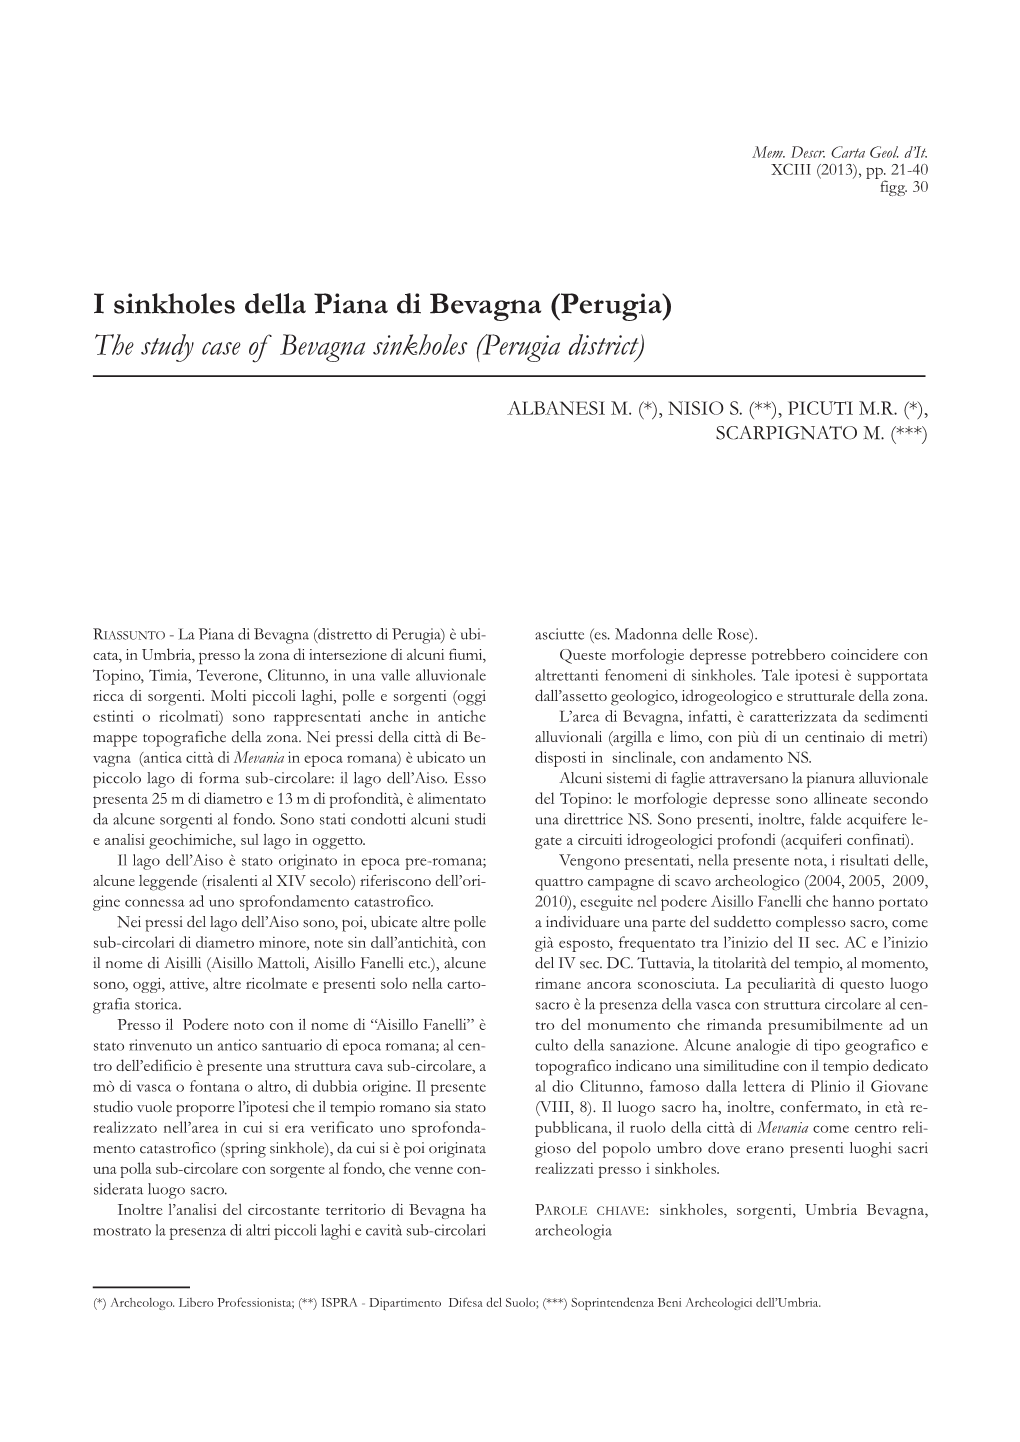 I Sinkholes Della Piana Di Bevagna (Perugia) the Study Case of Bevagna Sinkholes (Perugia District)